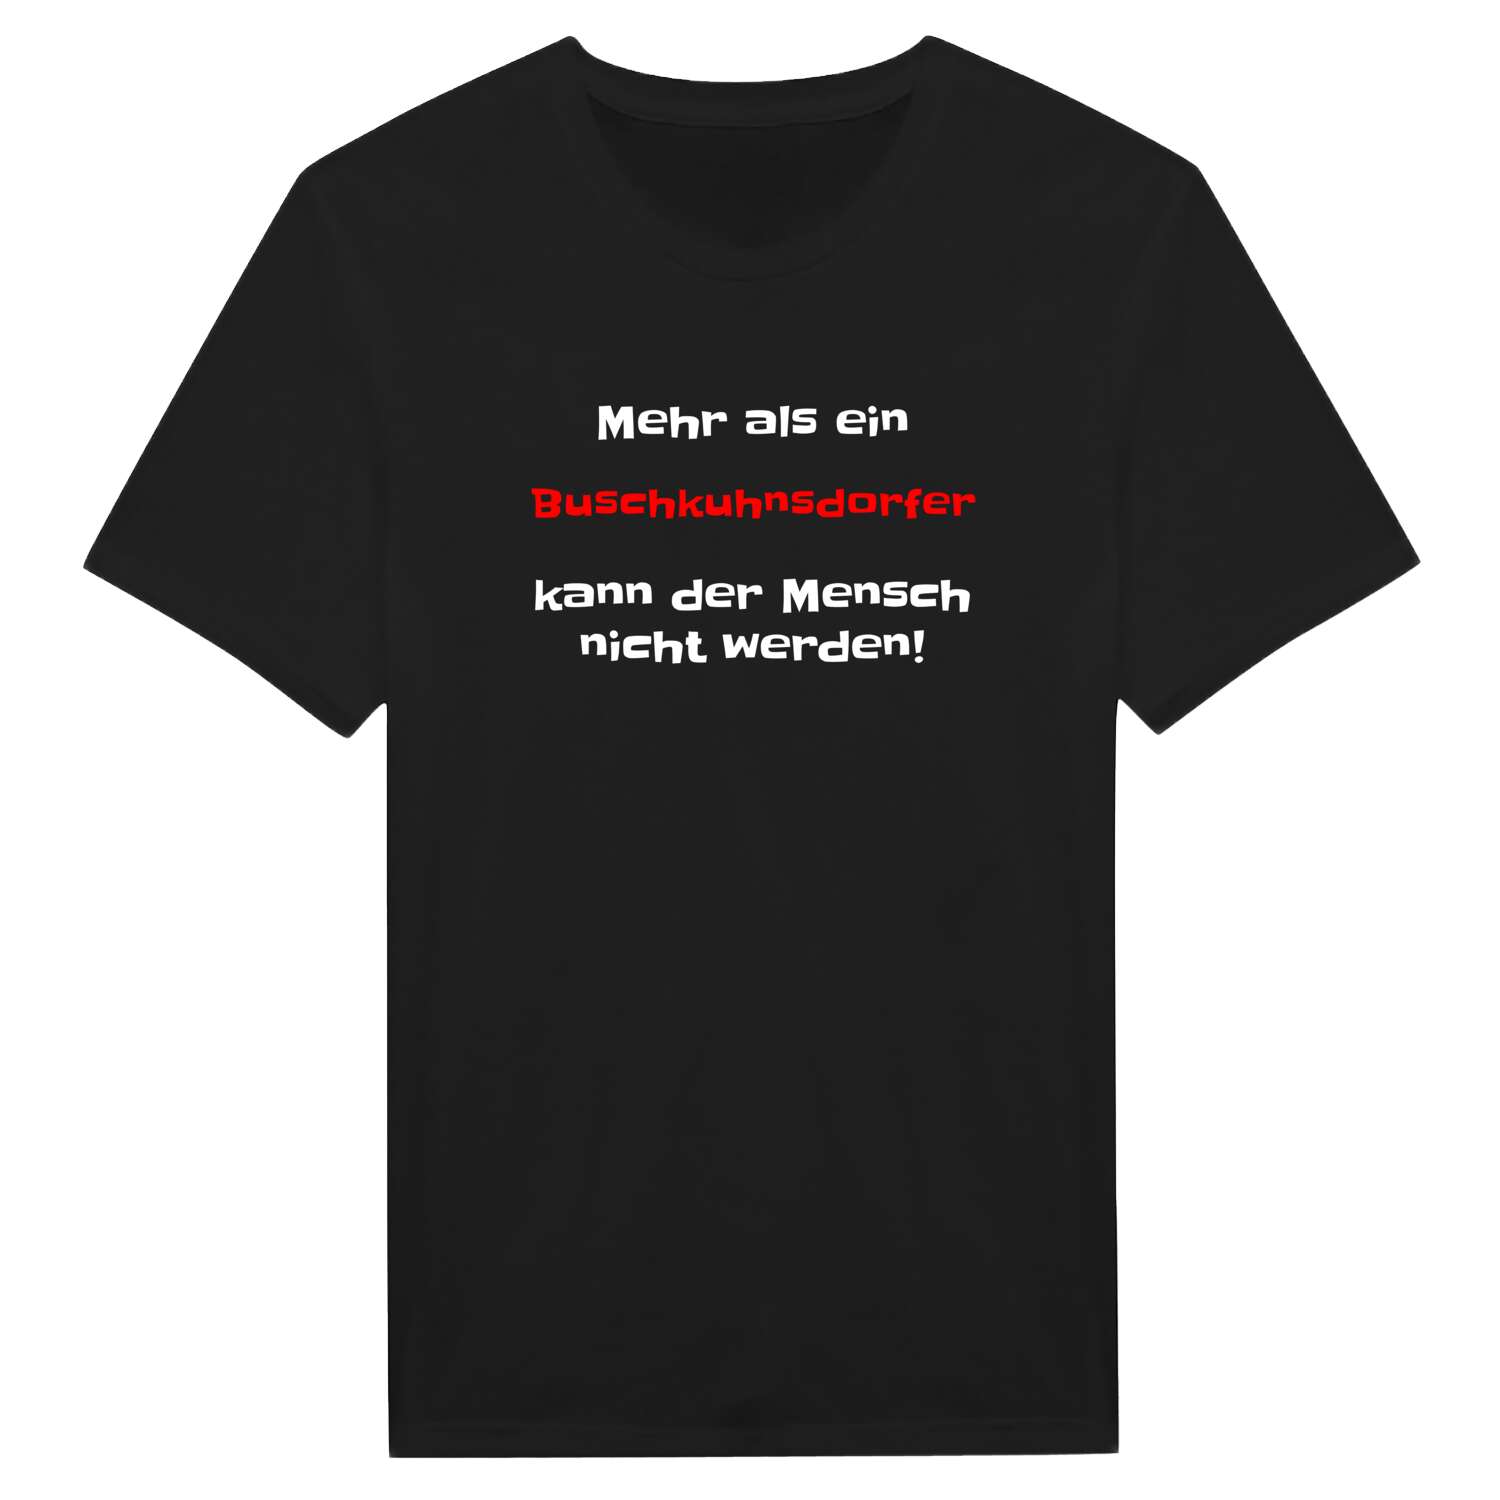 Buschkuhnsdorf T-Shirt »Mehr als ein«